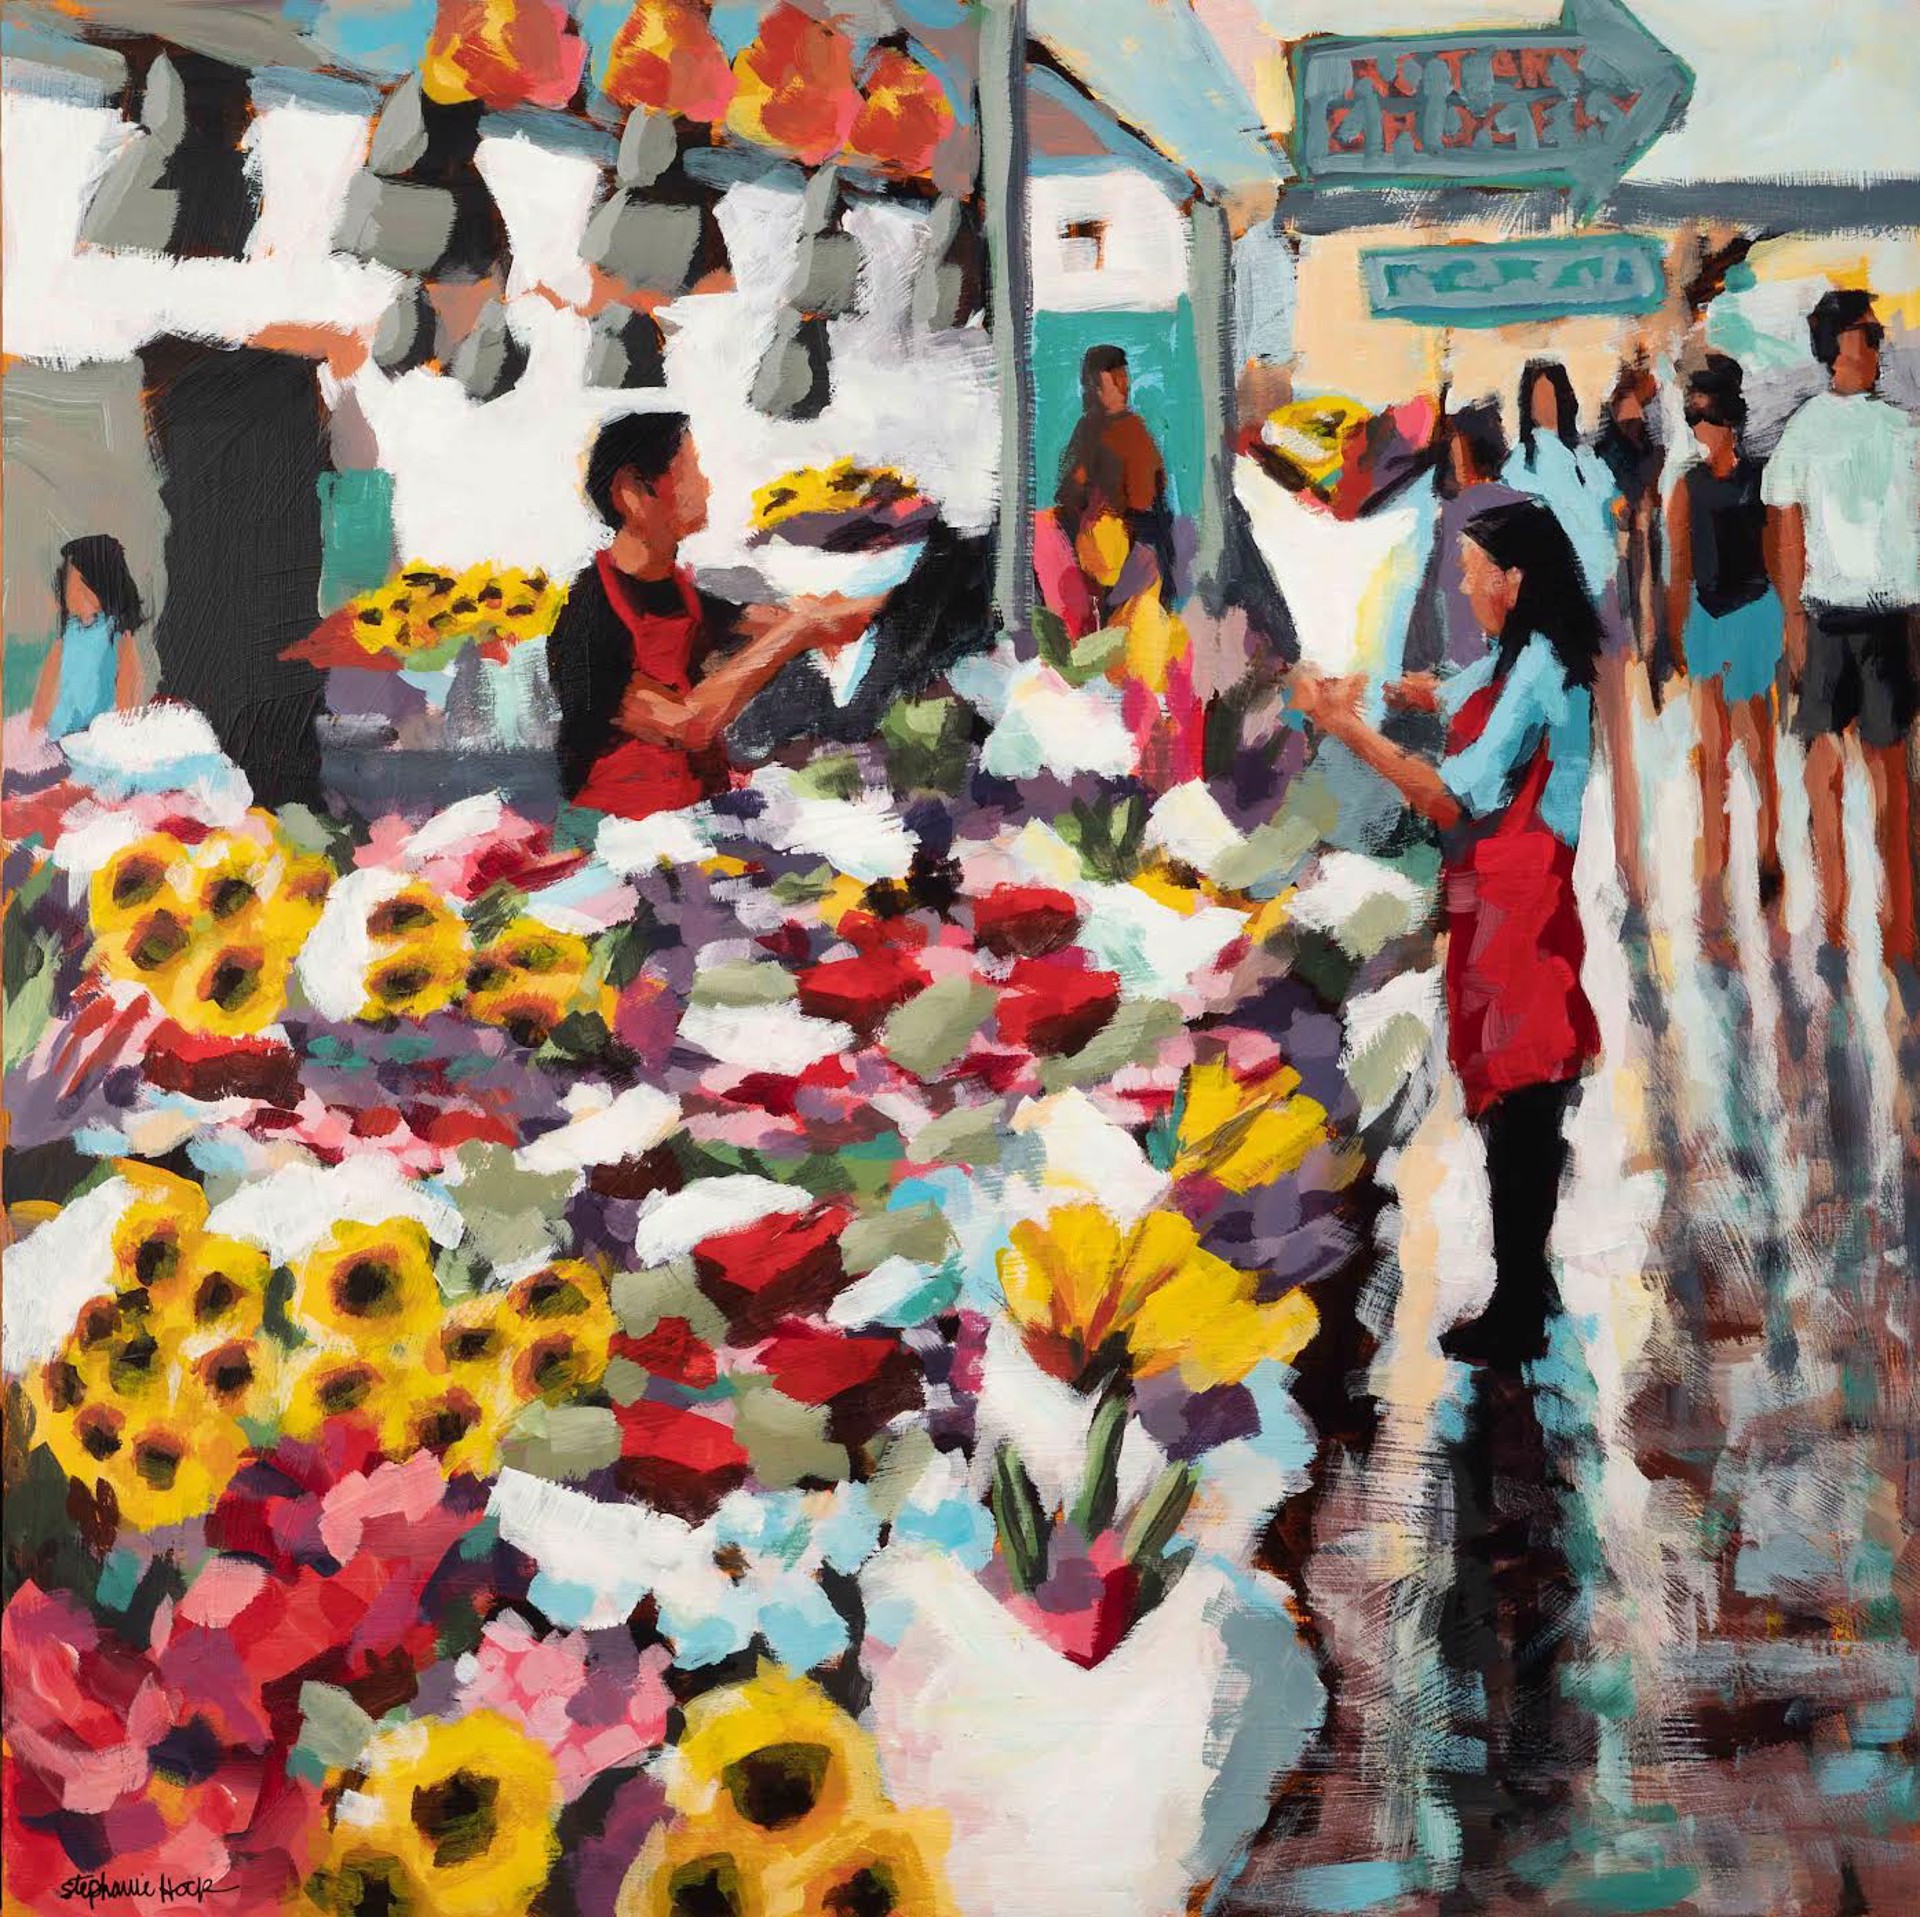 Flower market by Stephanie Hock